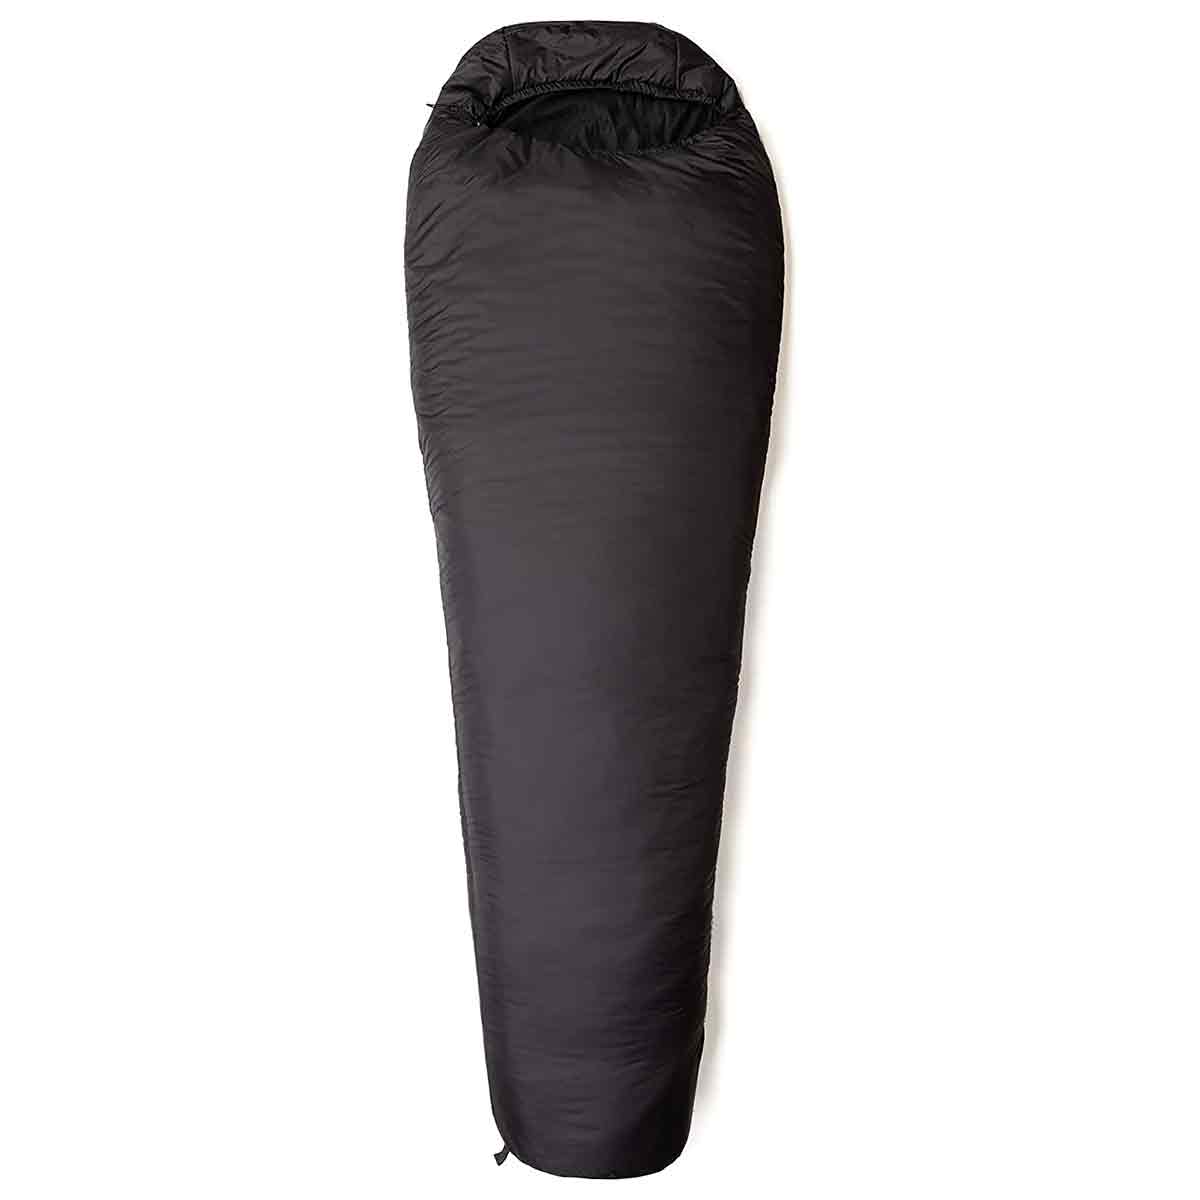 Snugpak Tactical 2 Sleeping Bag - John Bull Clothing